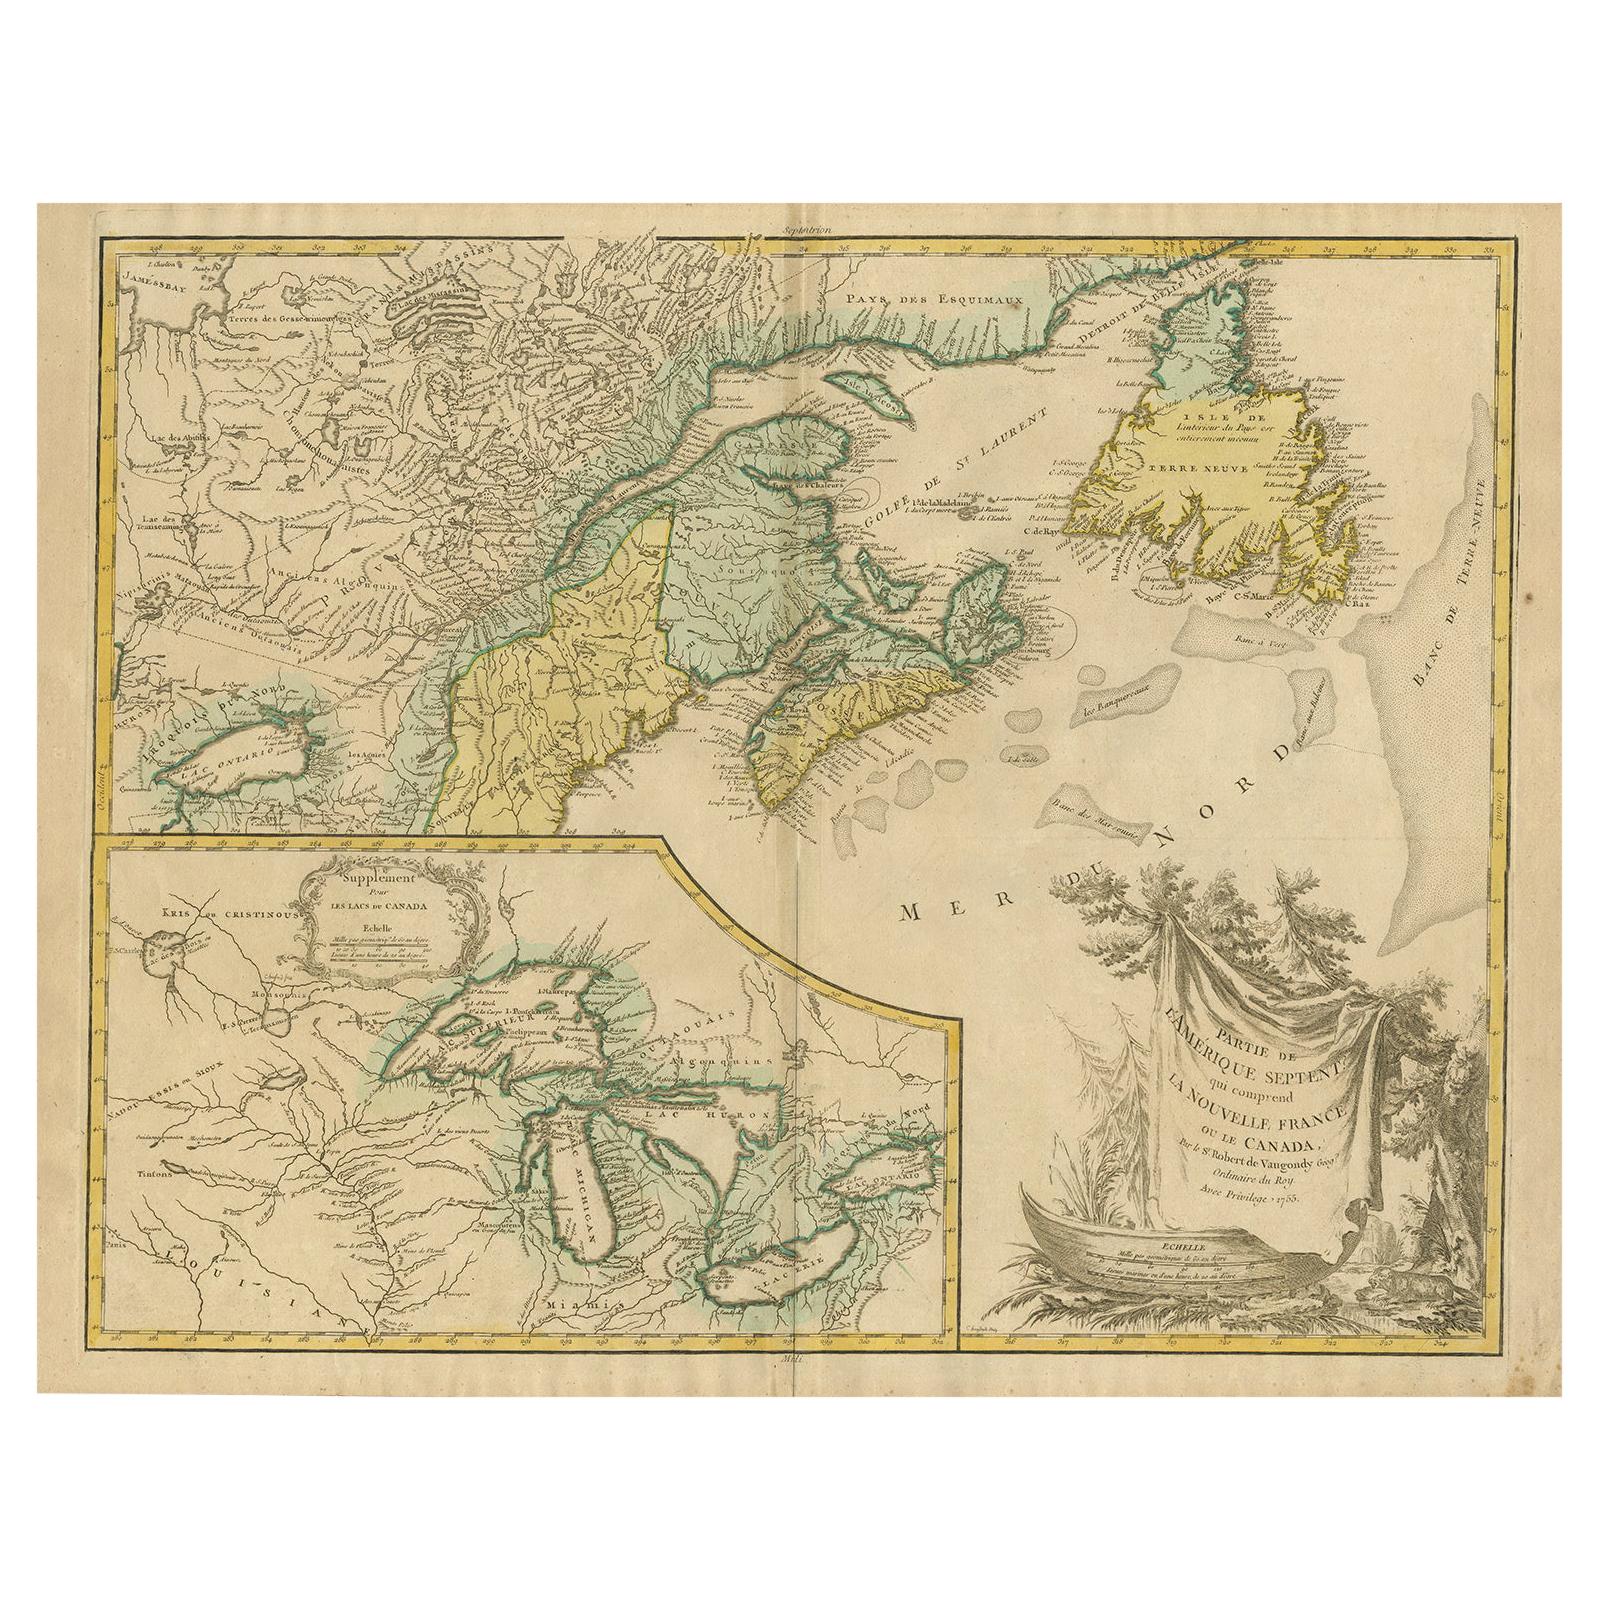 Carte ancienne de la Nouvelle-Angleterre et d'une partie du Canada par Vaugondy, vers 1755